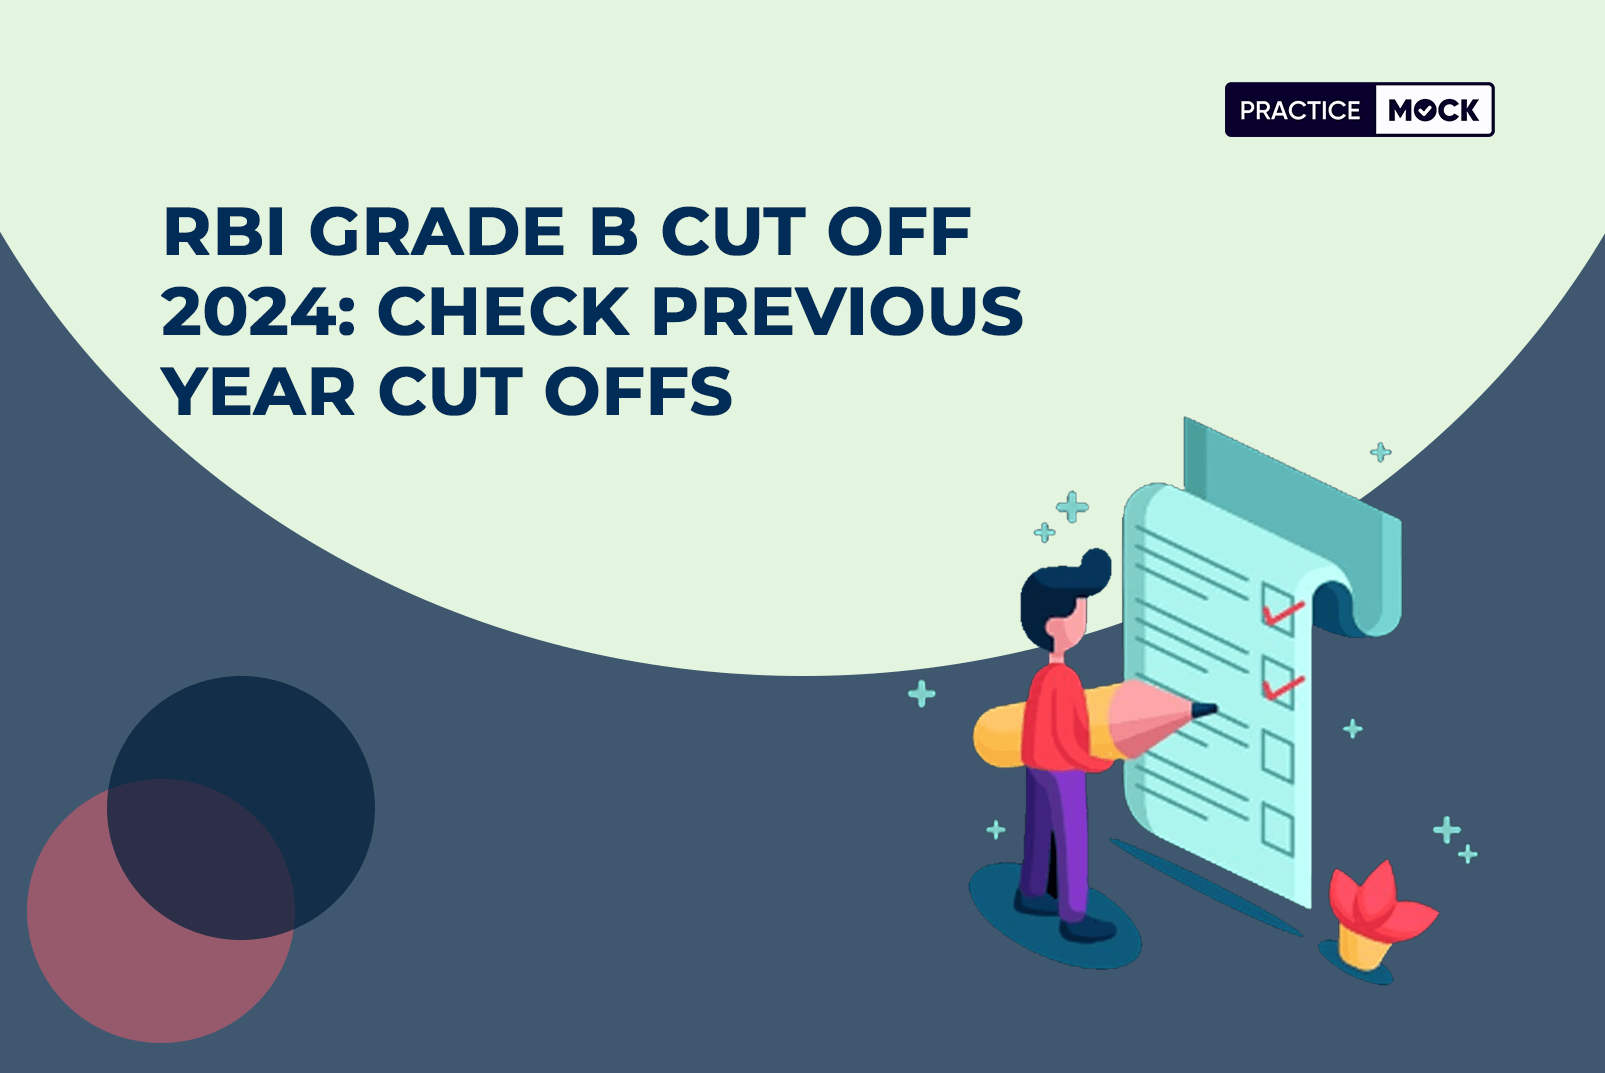 RBI Grade B Cut Off 2024 Check Previous Year Cut Offs